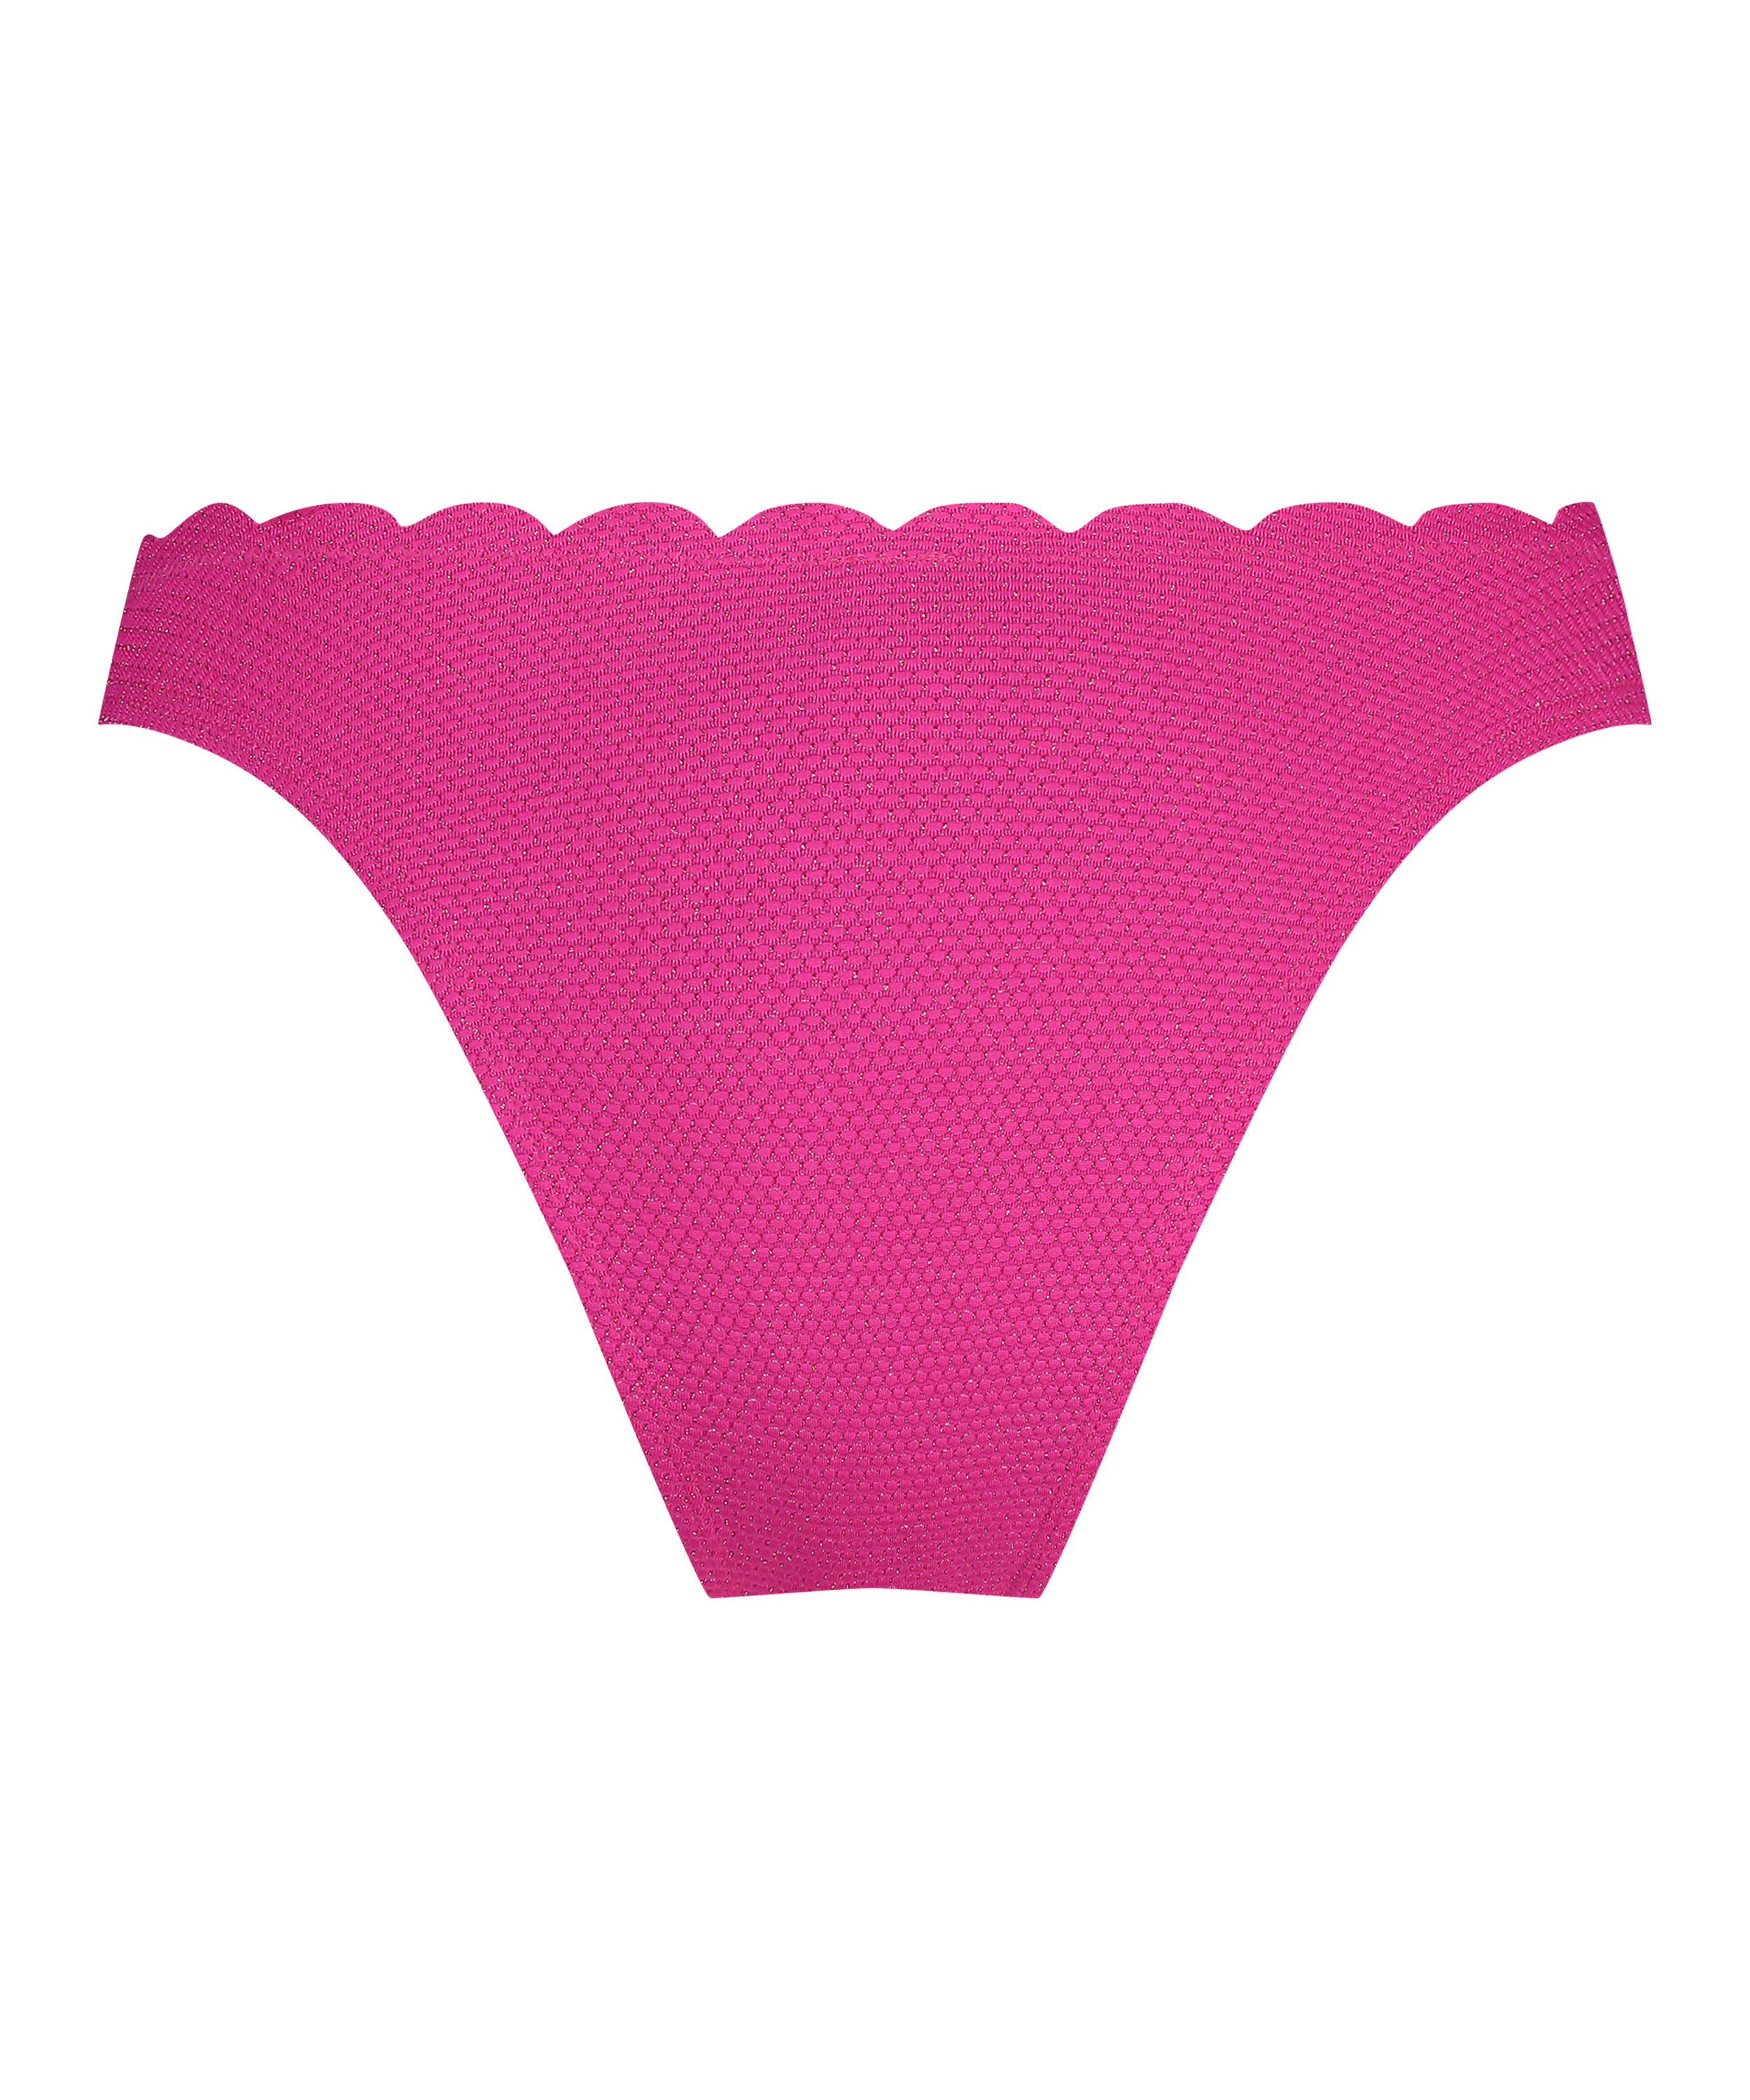 Bikini Slip mit hohem Beinausschnitt Lurex Scallop, Rose, main